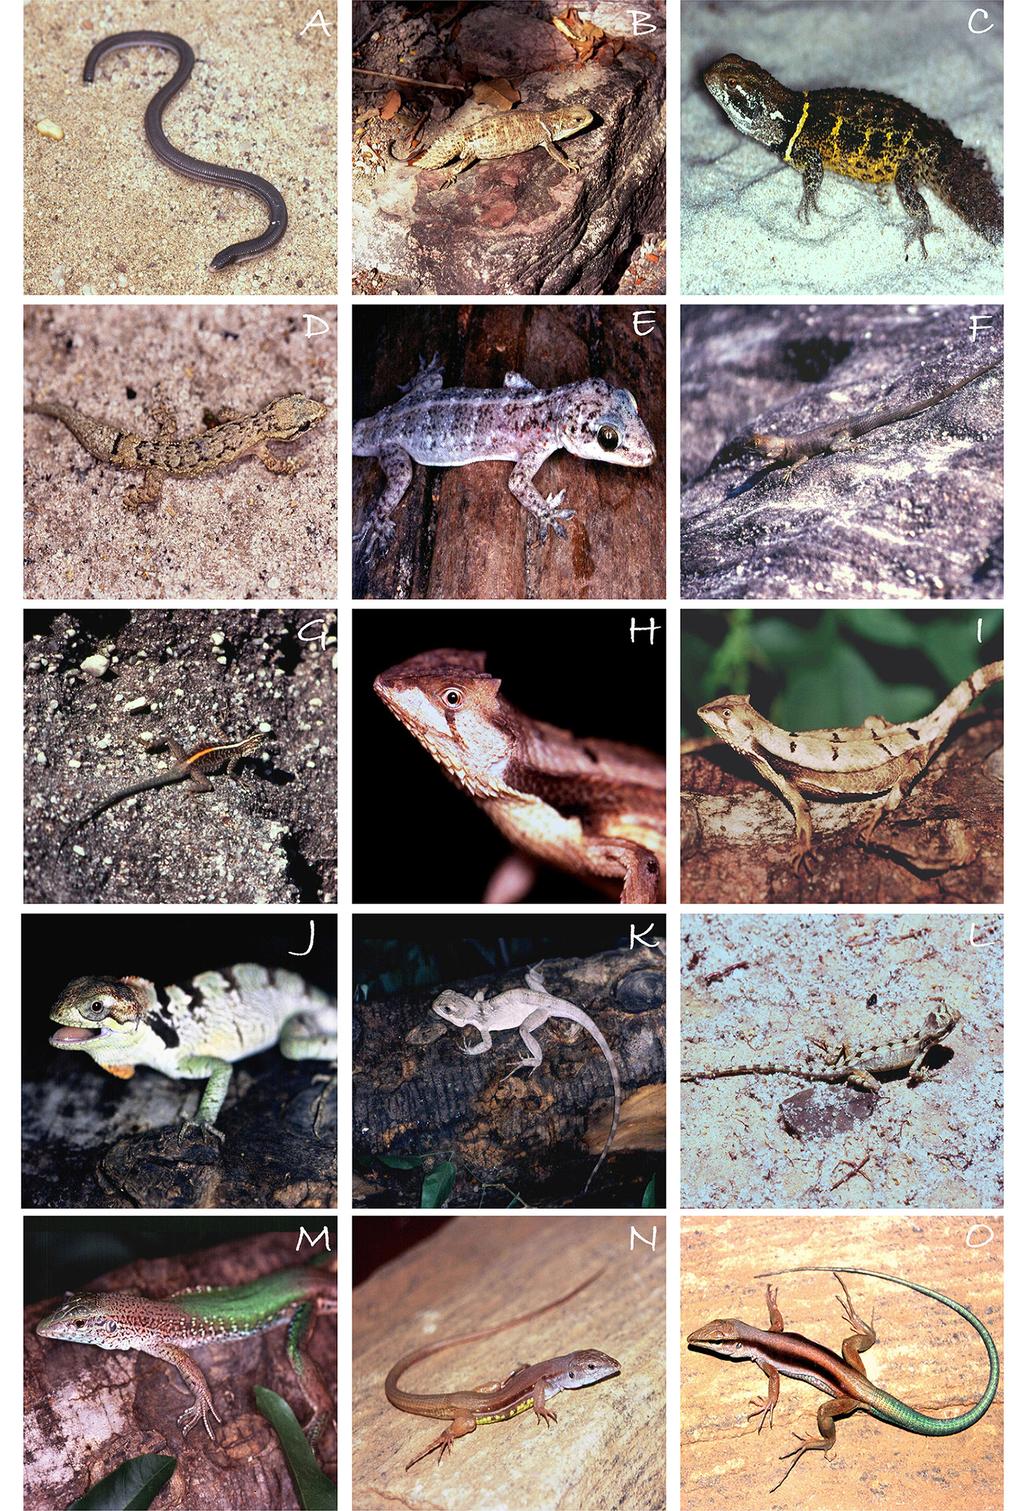 7 Herpetofauna of Parque Nacional da Serra das Confusões Figure 4. Some of the reptile sampled at PNSCo.